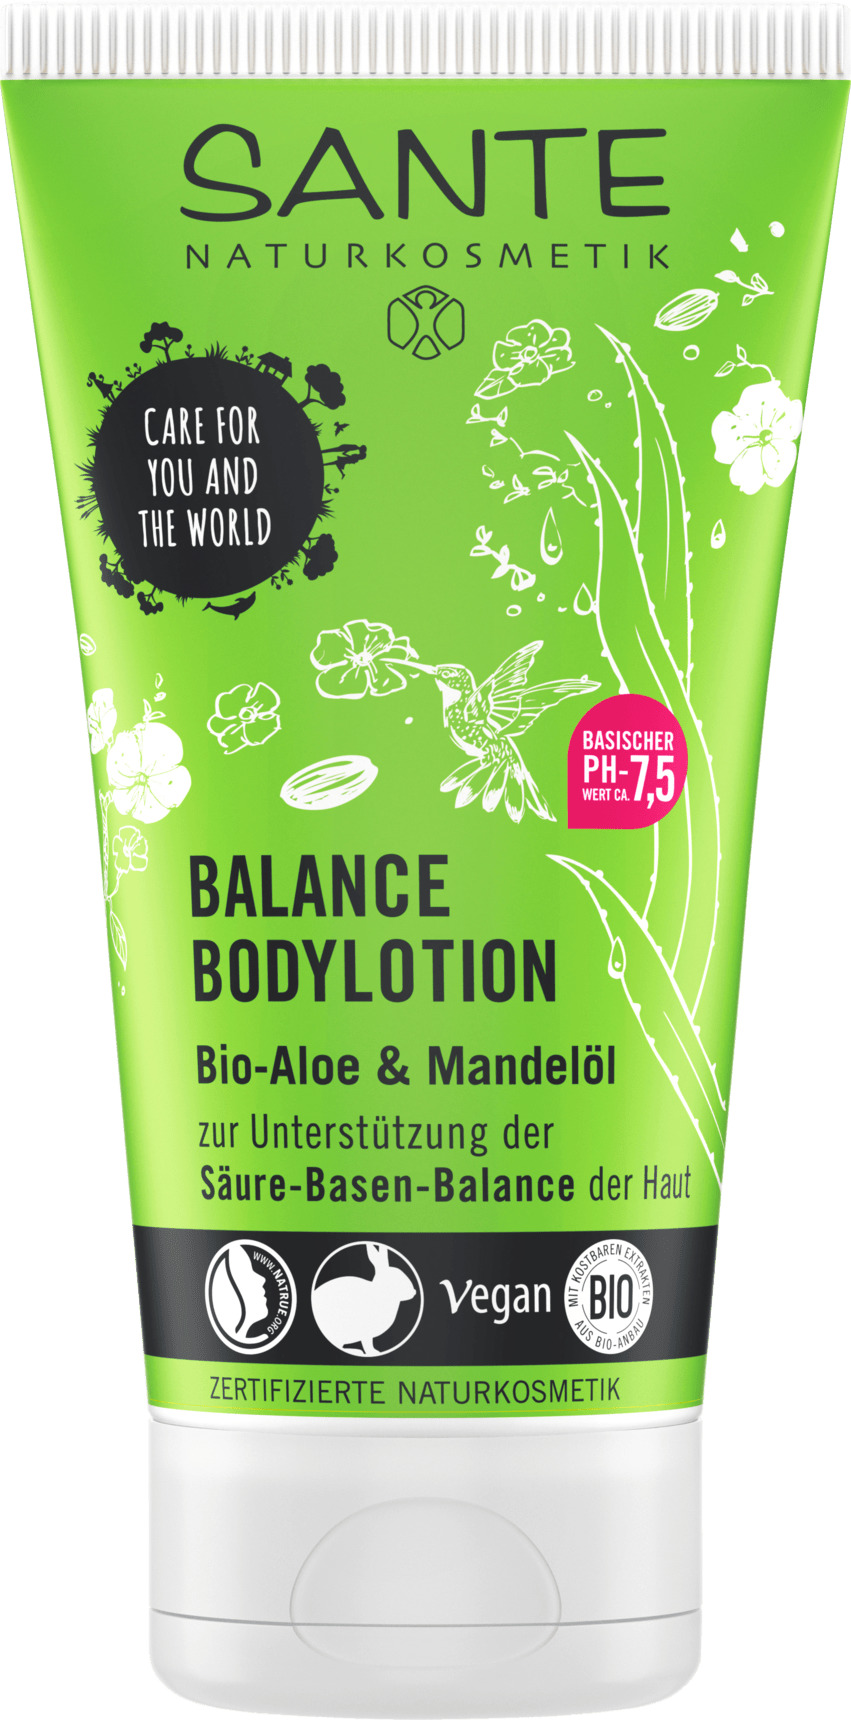 Køb Sante Body Lotion Balance her! ✓ billigt